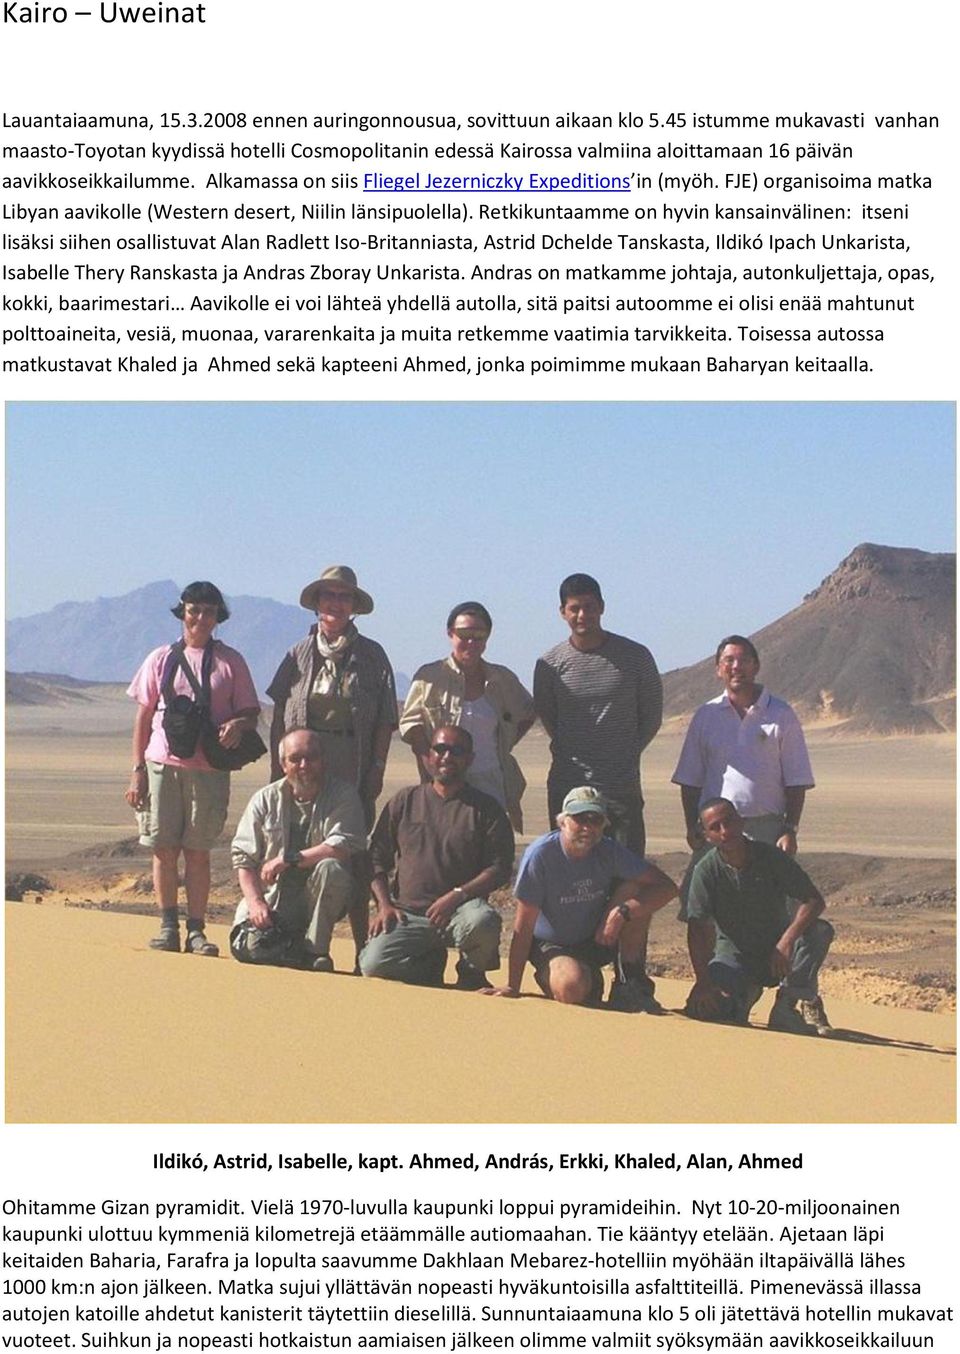 Alkamassa on siis Fliegel Jezerniczky Expeditions in (myöh. FJE) organisoima matka Libyan aavikolle (Western desert, Niilin länsipuolella).